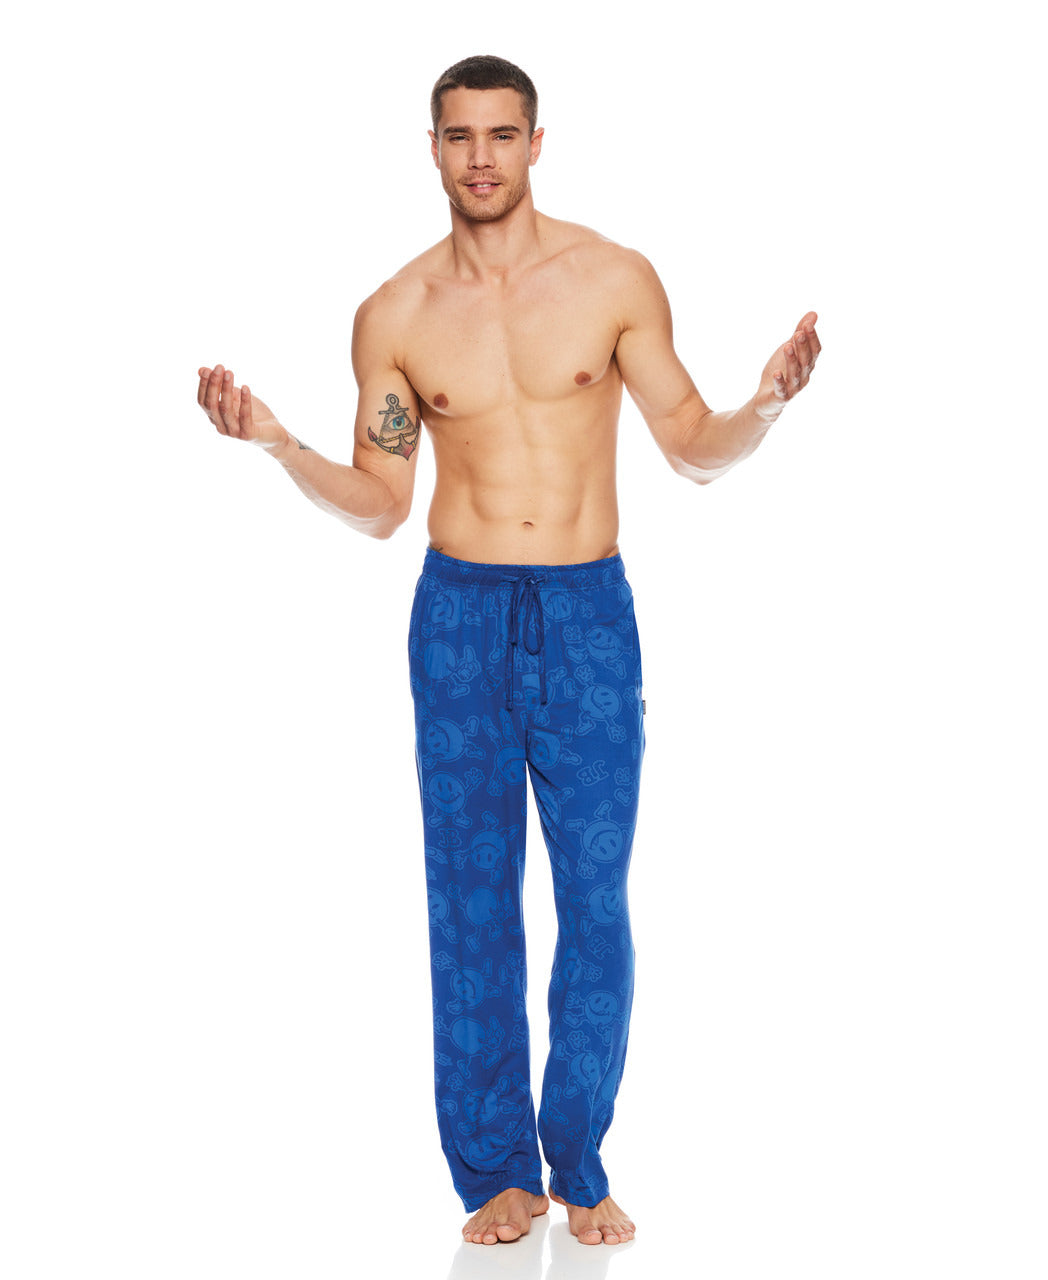 Joe Boxer Men's Blue "Subtle Licky" Open Leg Lounge Pants